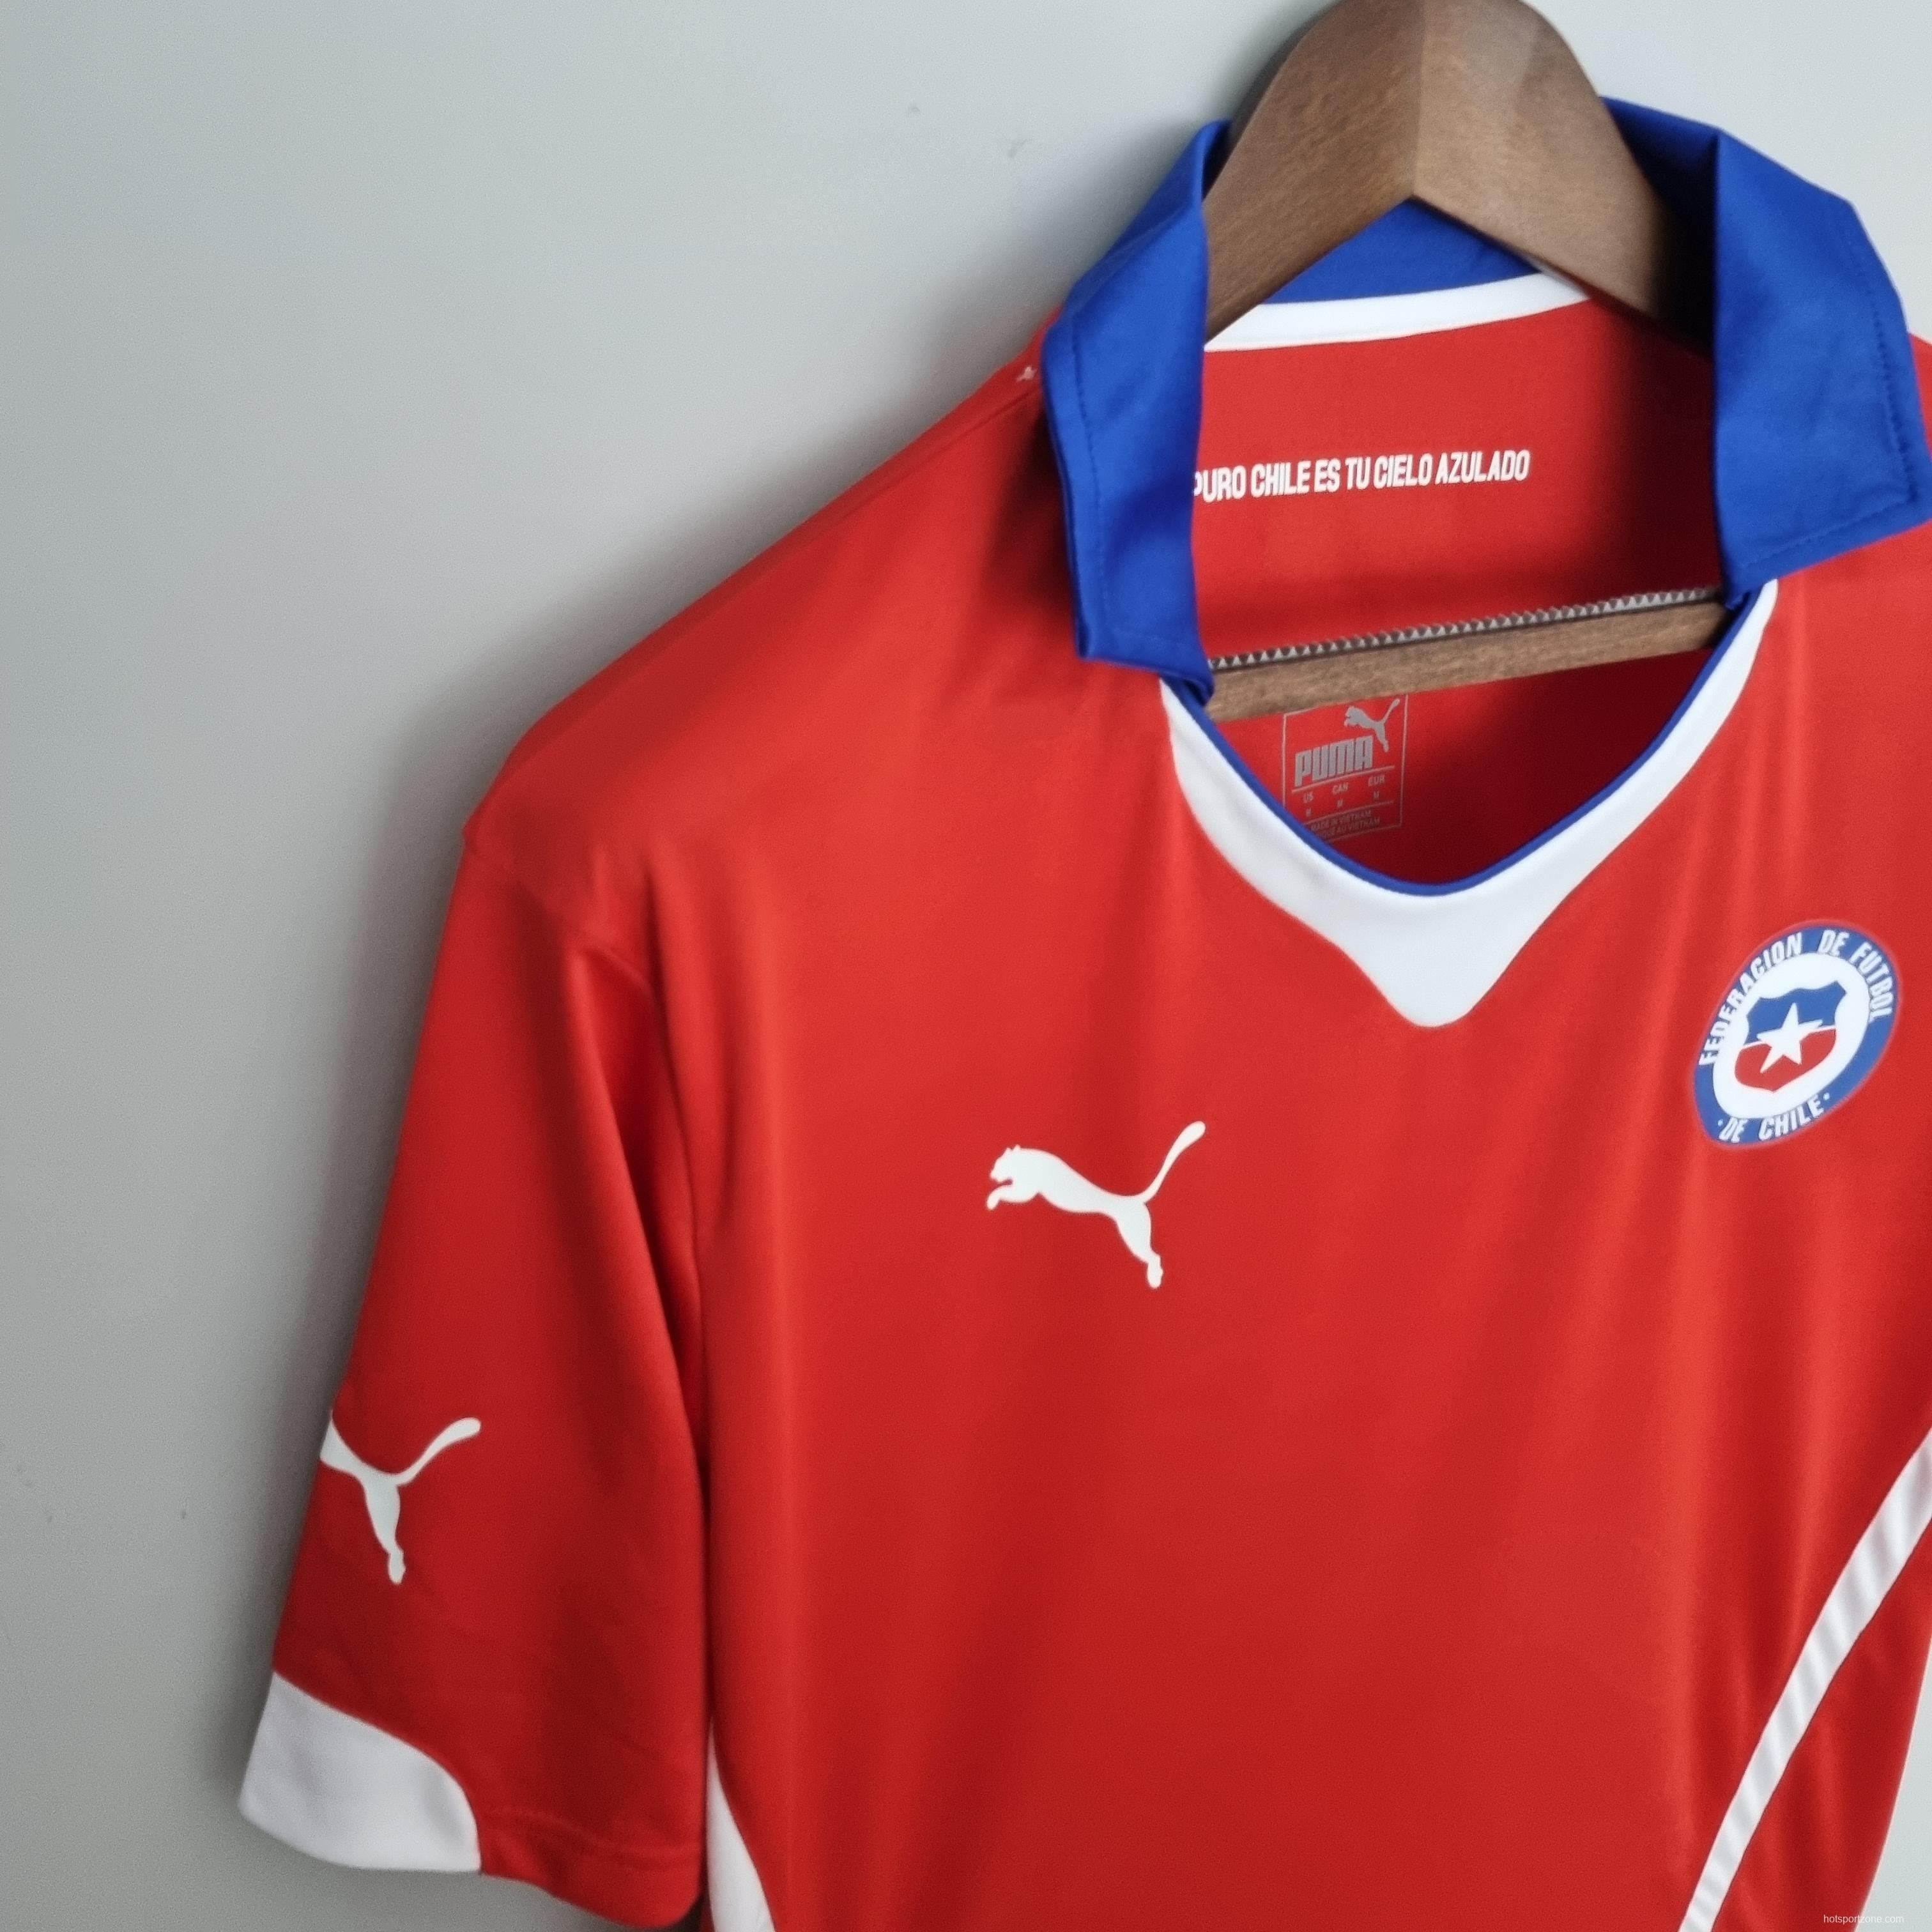 Retro 2014 Chile home Soccer Jersey